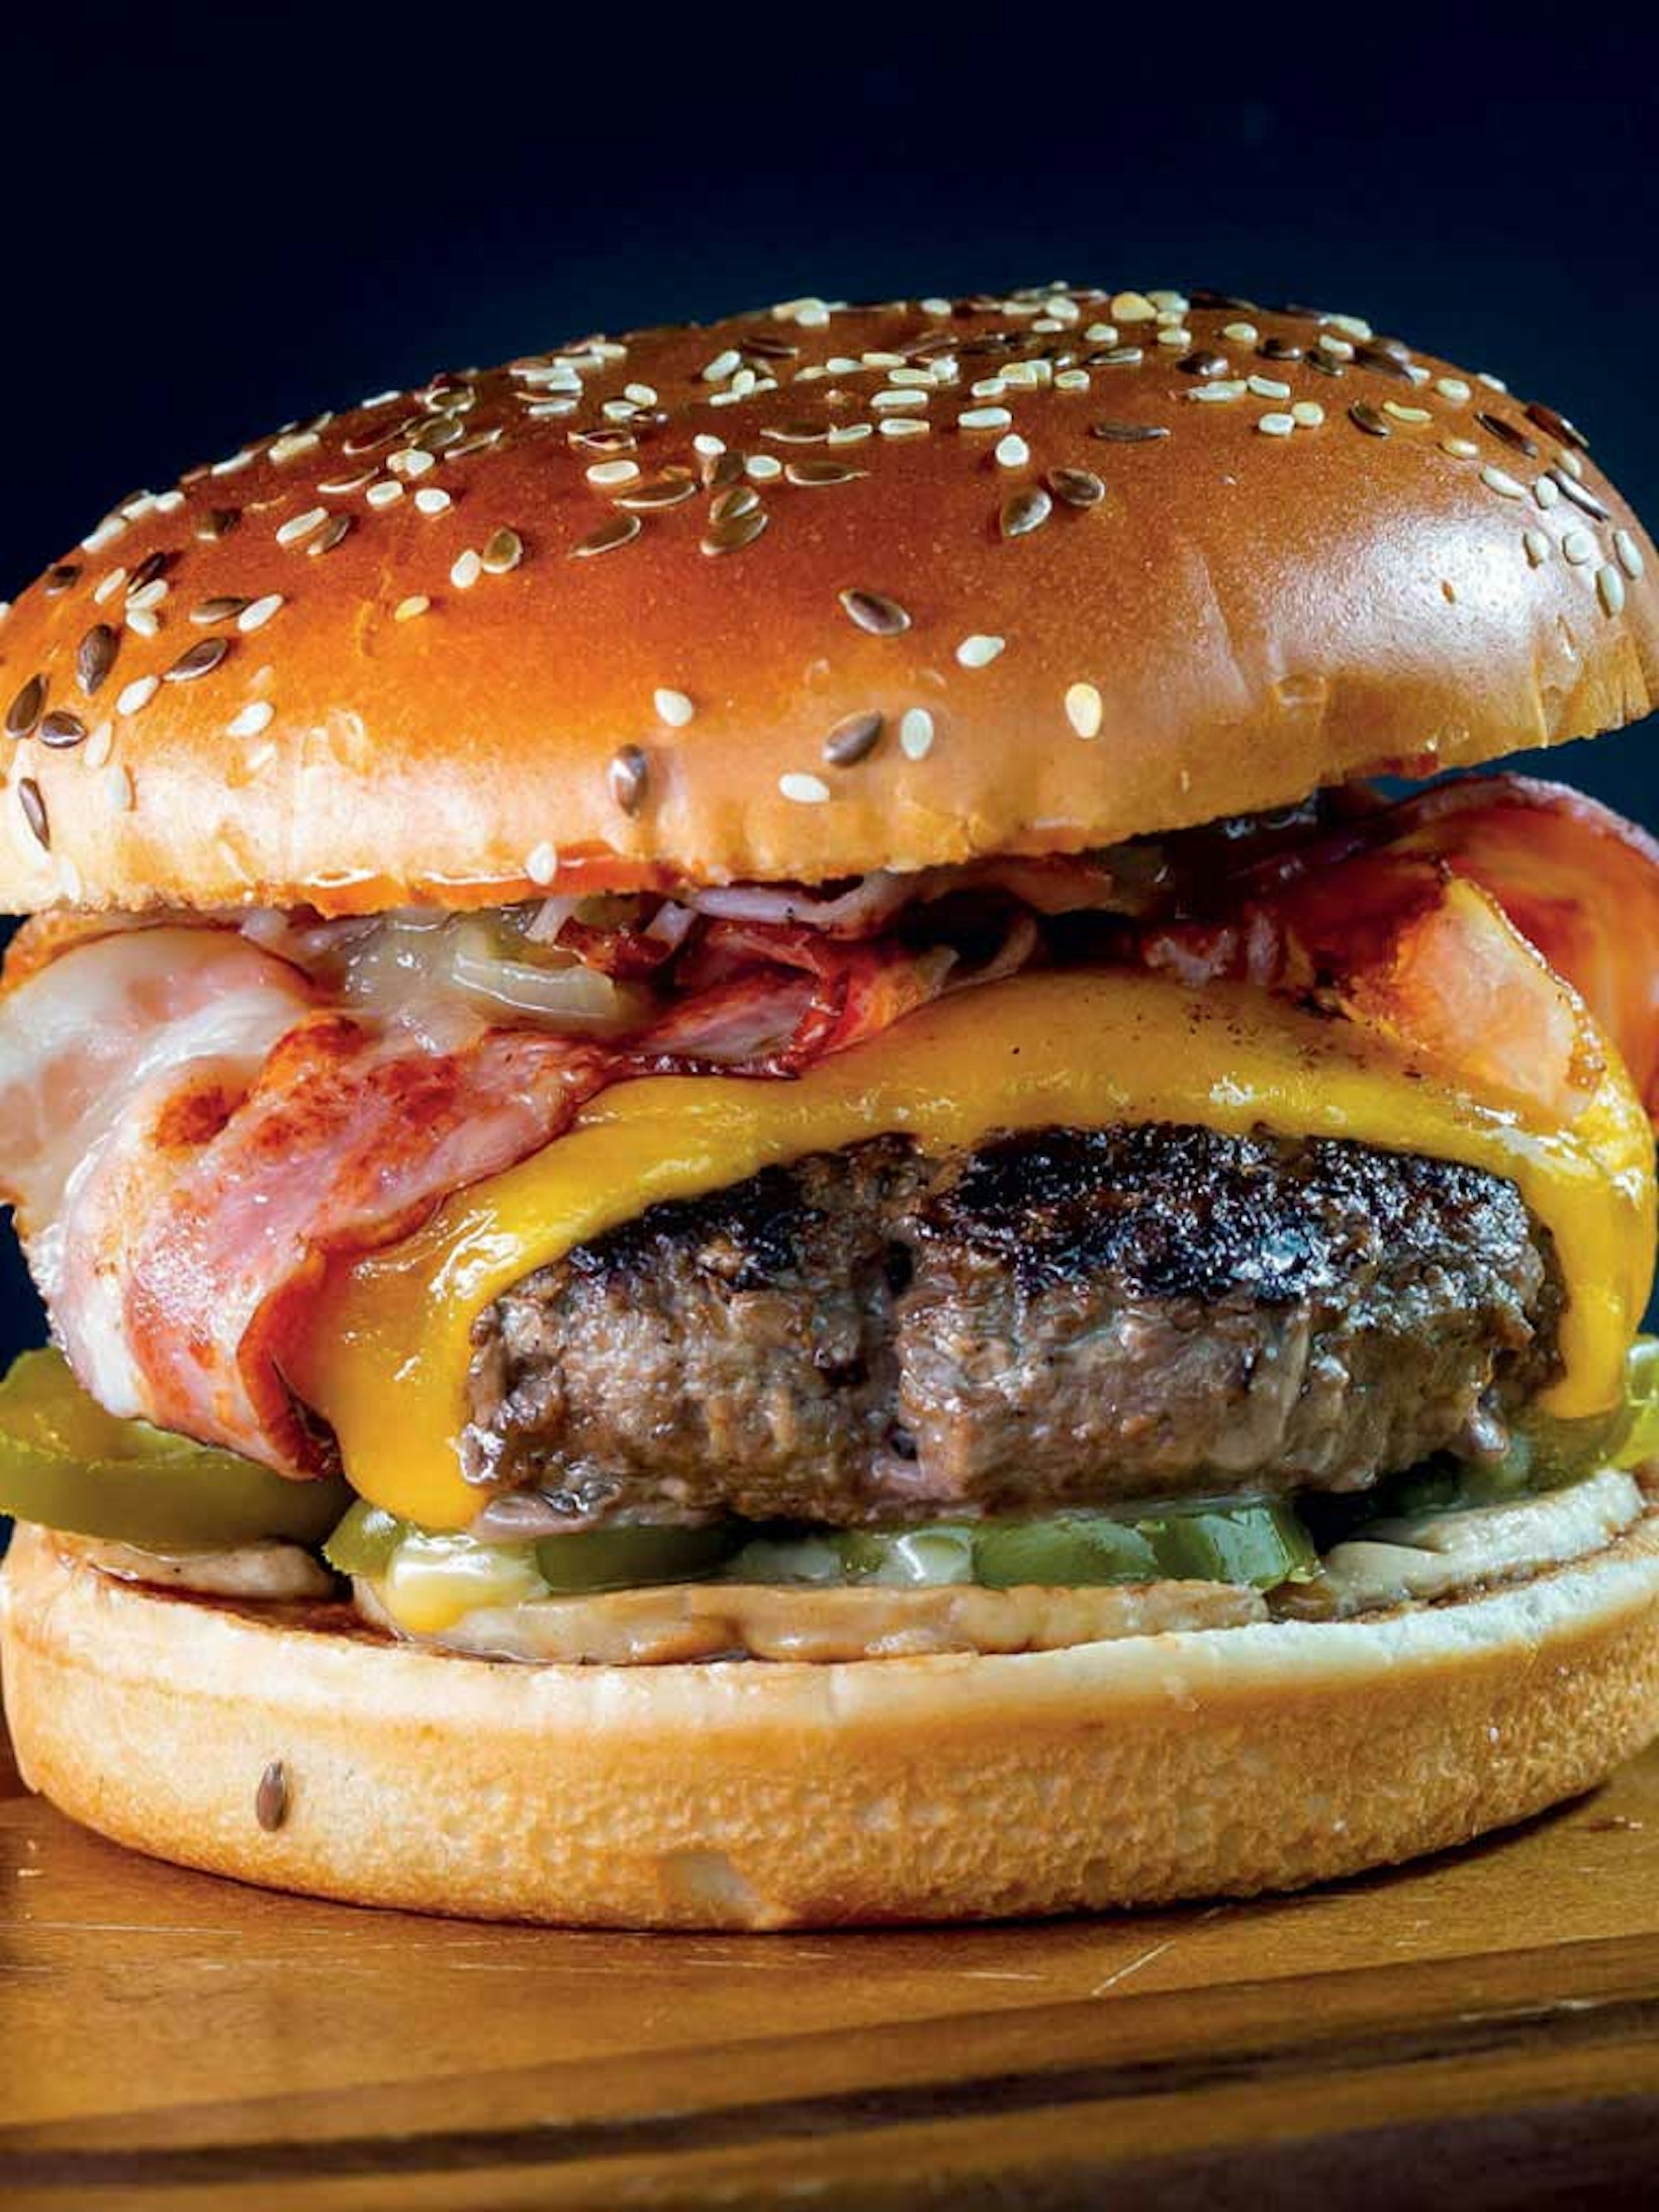 Contact Grill Bacon Cheeseburger | House blog